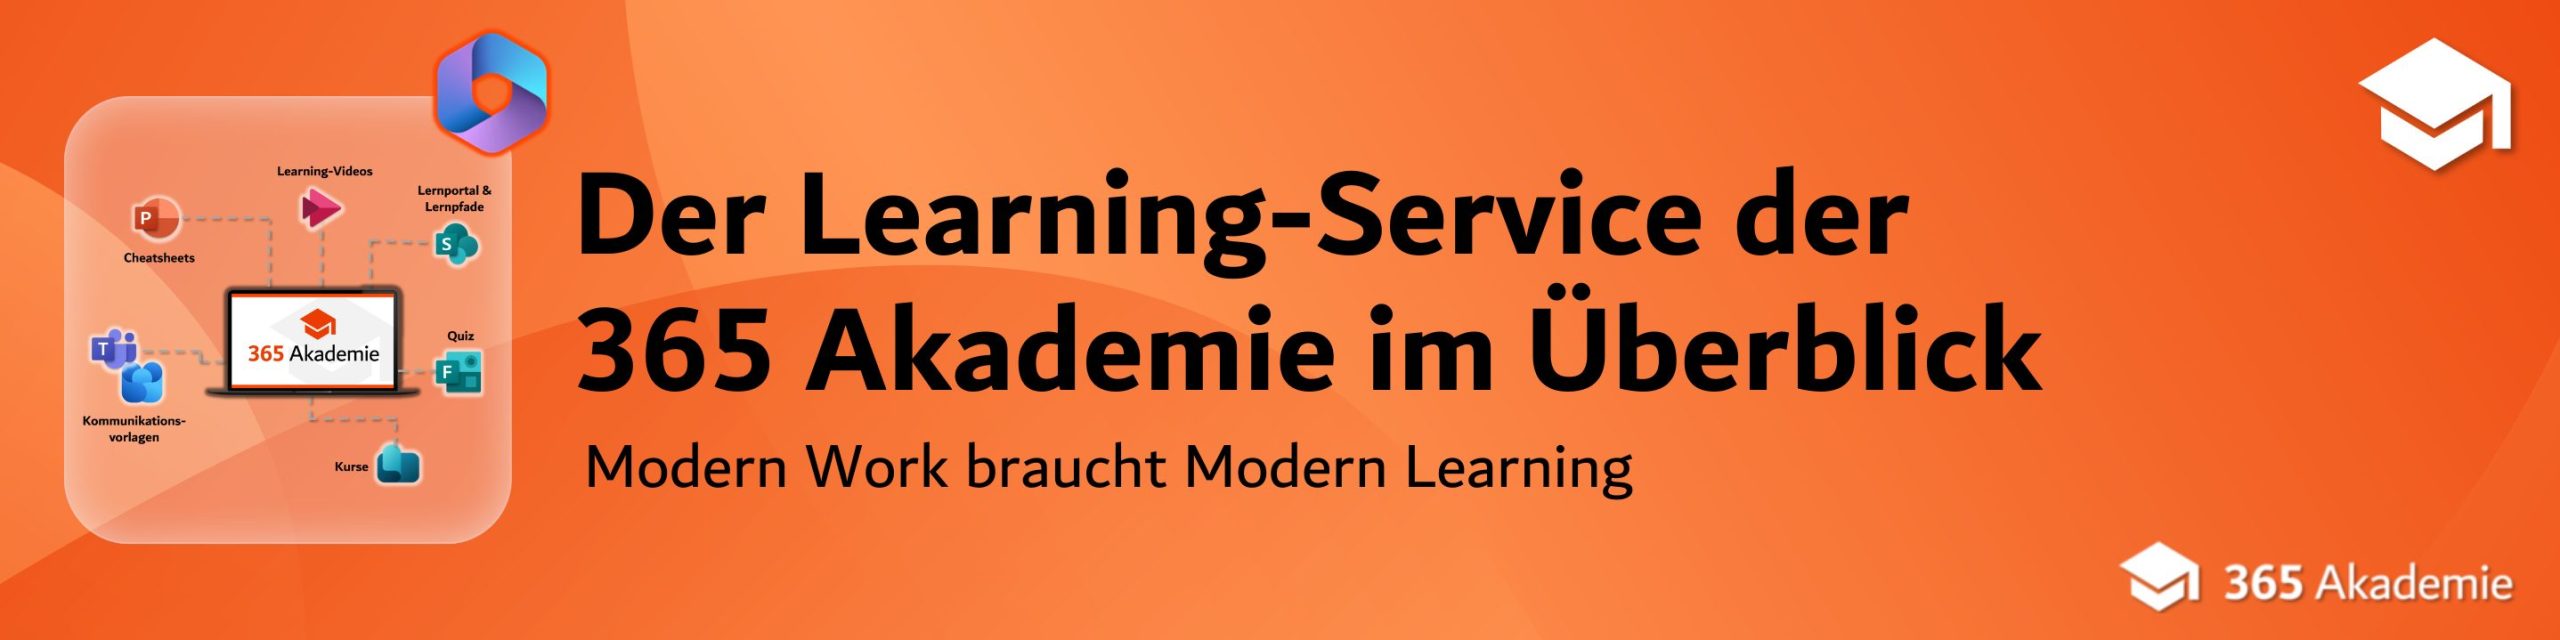 Der Learning-Service der<br />
365 Akademie im Überblick 